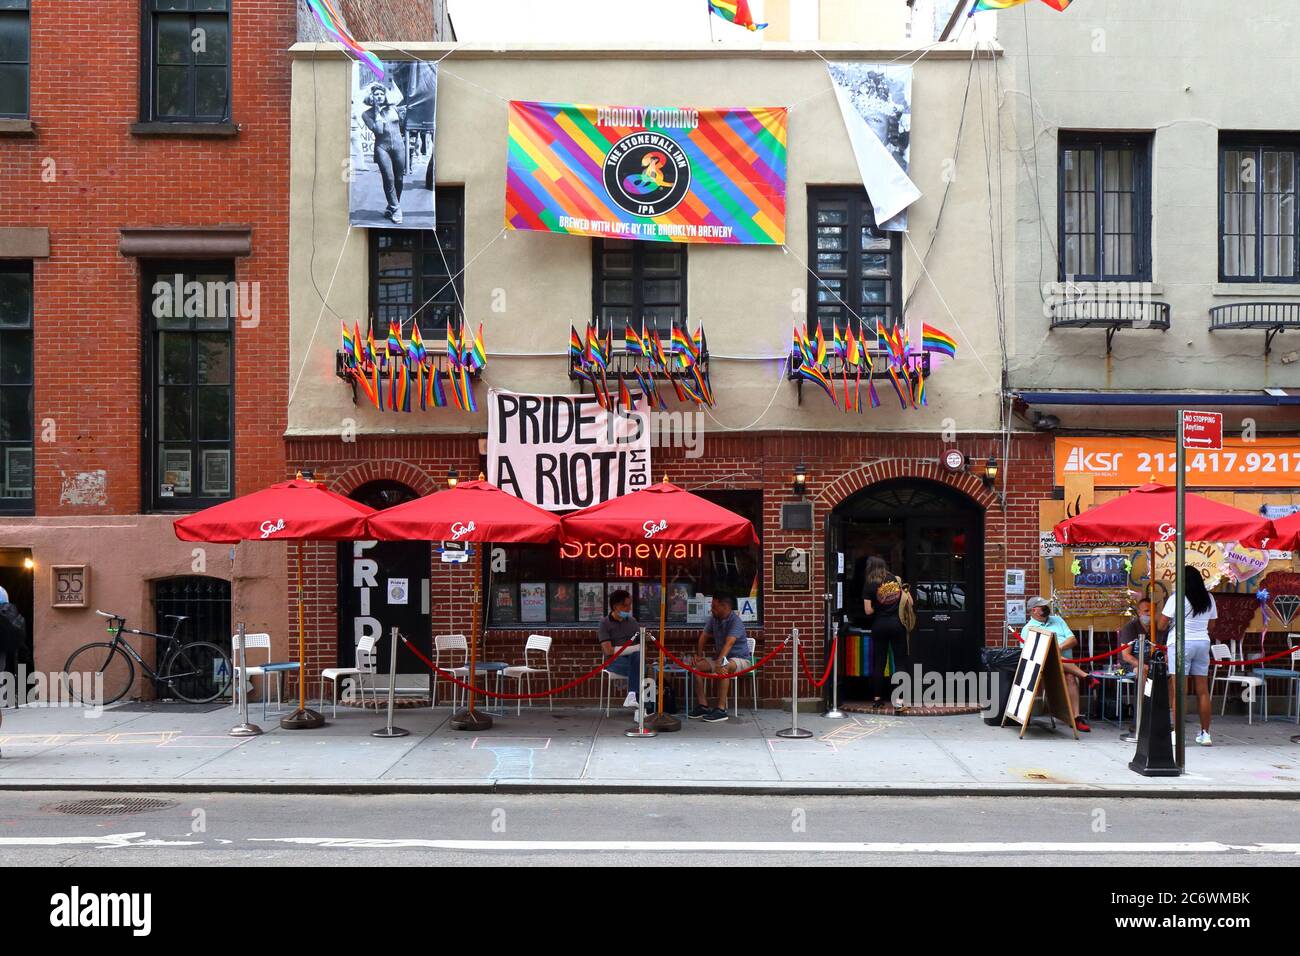 Nueva York. 30 de junio de 2020. Stonewall Inn adornado con unas pocas banderas incluyendo 'Pride is a Riot', y amueblado con asientos al aire libre socialmente distanciados. Foto de stock